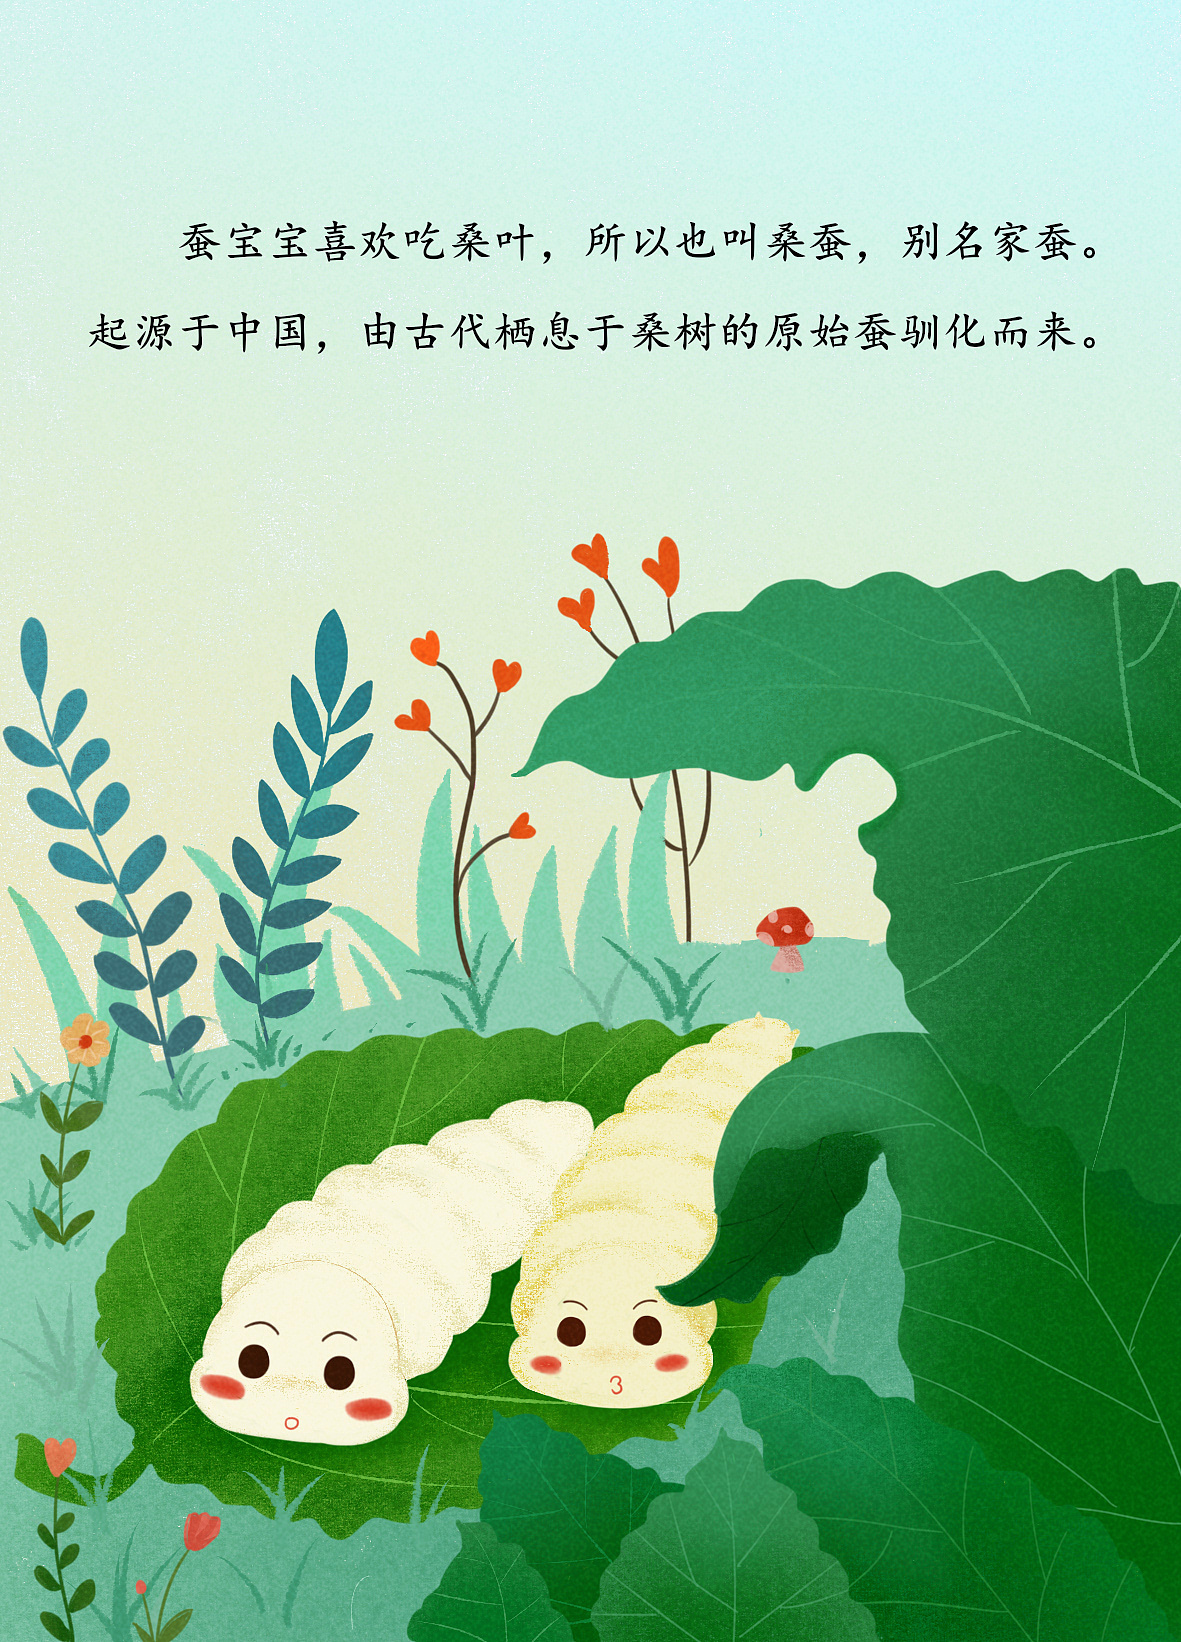 蚕宝宝成长记 - 多彩的一天 - 杭州市德胜幼儿园